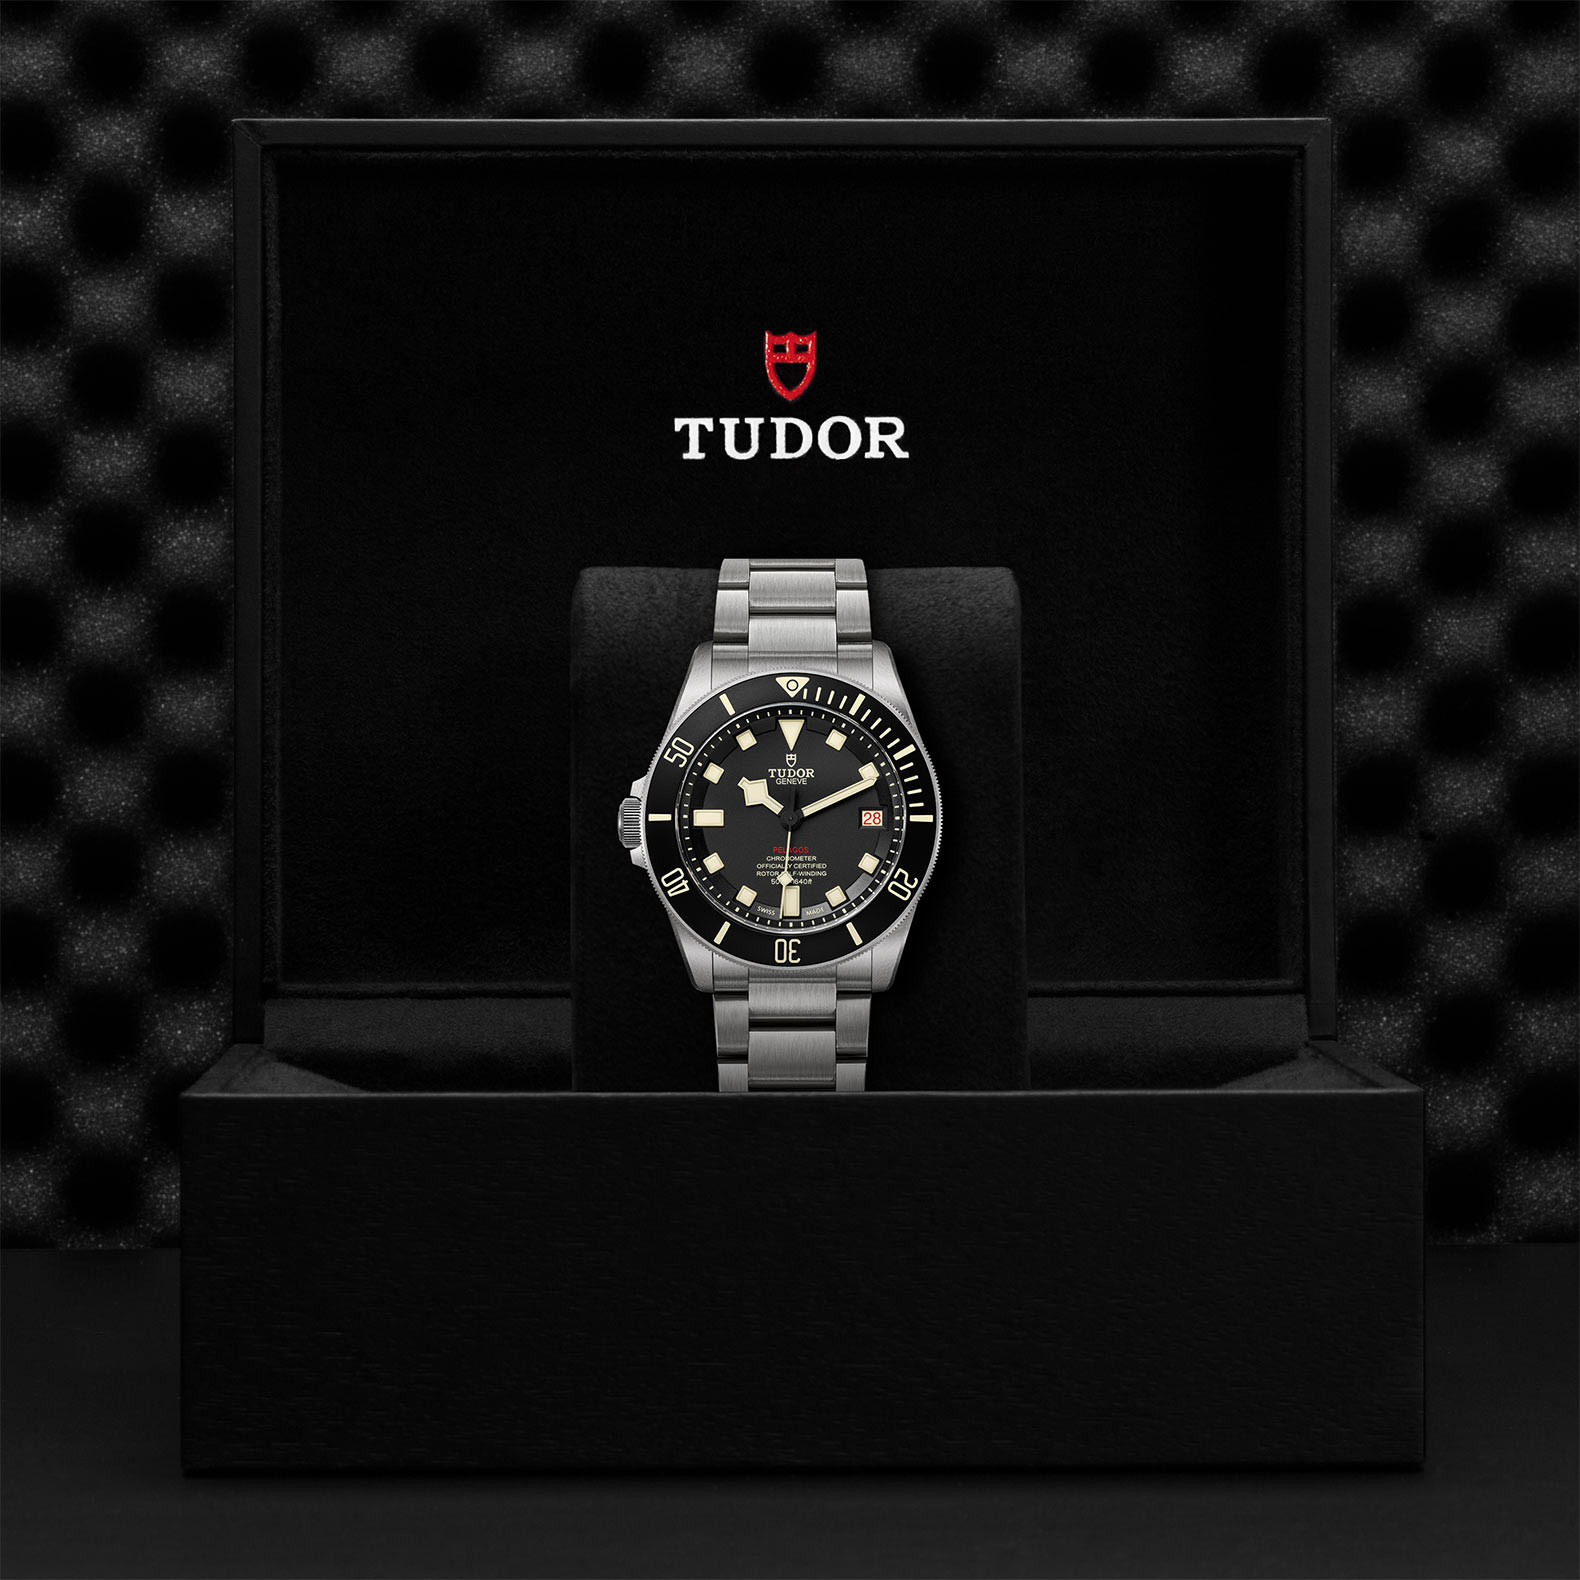 TUDOR Pelagos LHD Watch in Presentation Box